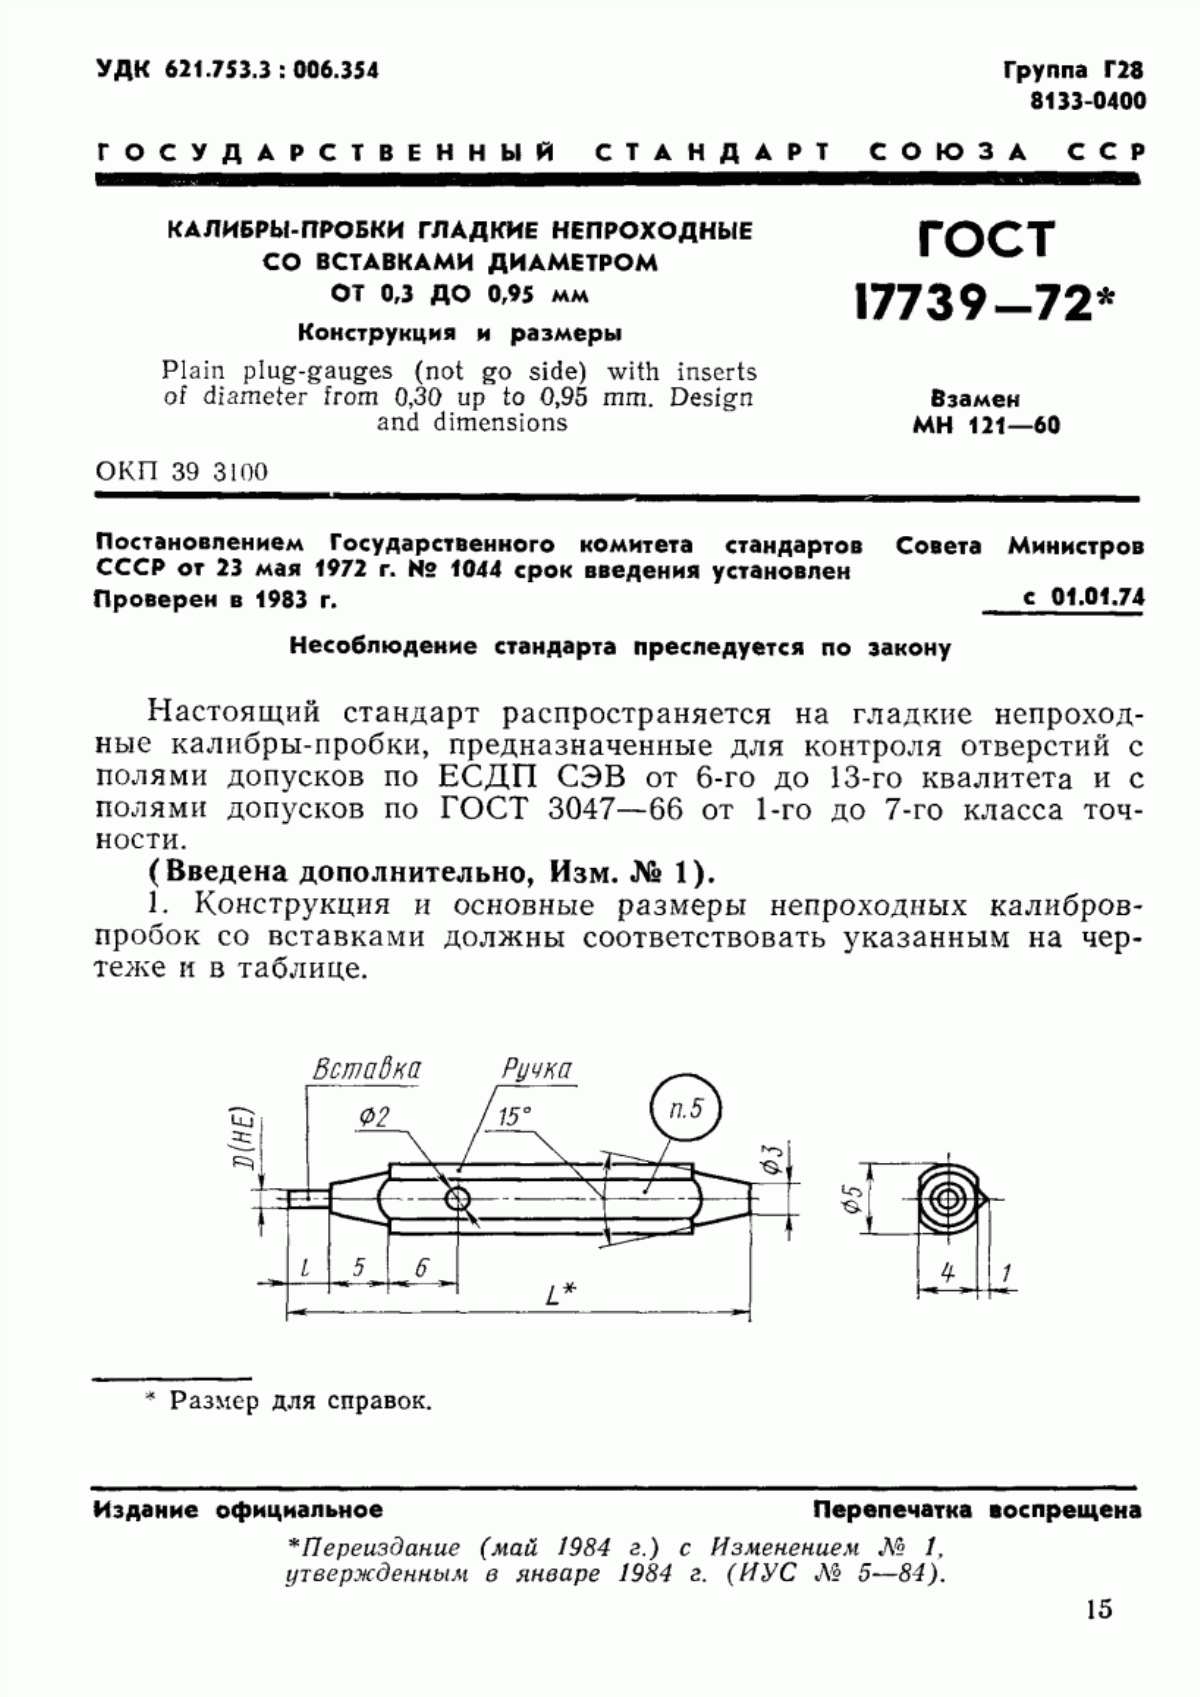 ГОСТ 17739-72 Калибры-пробки гладкие непроходные со вставками диаметром от 0,3 до 0,95 мм. Конструкция и размеры